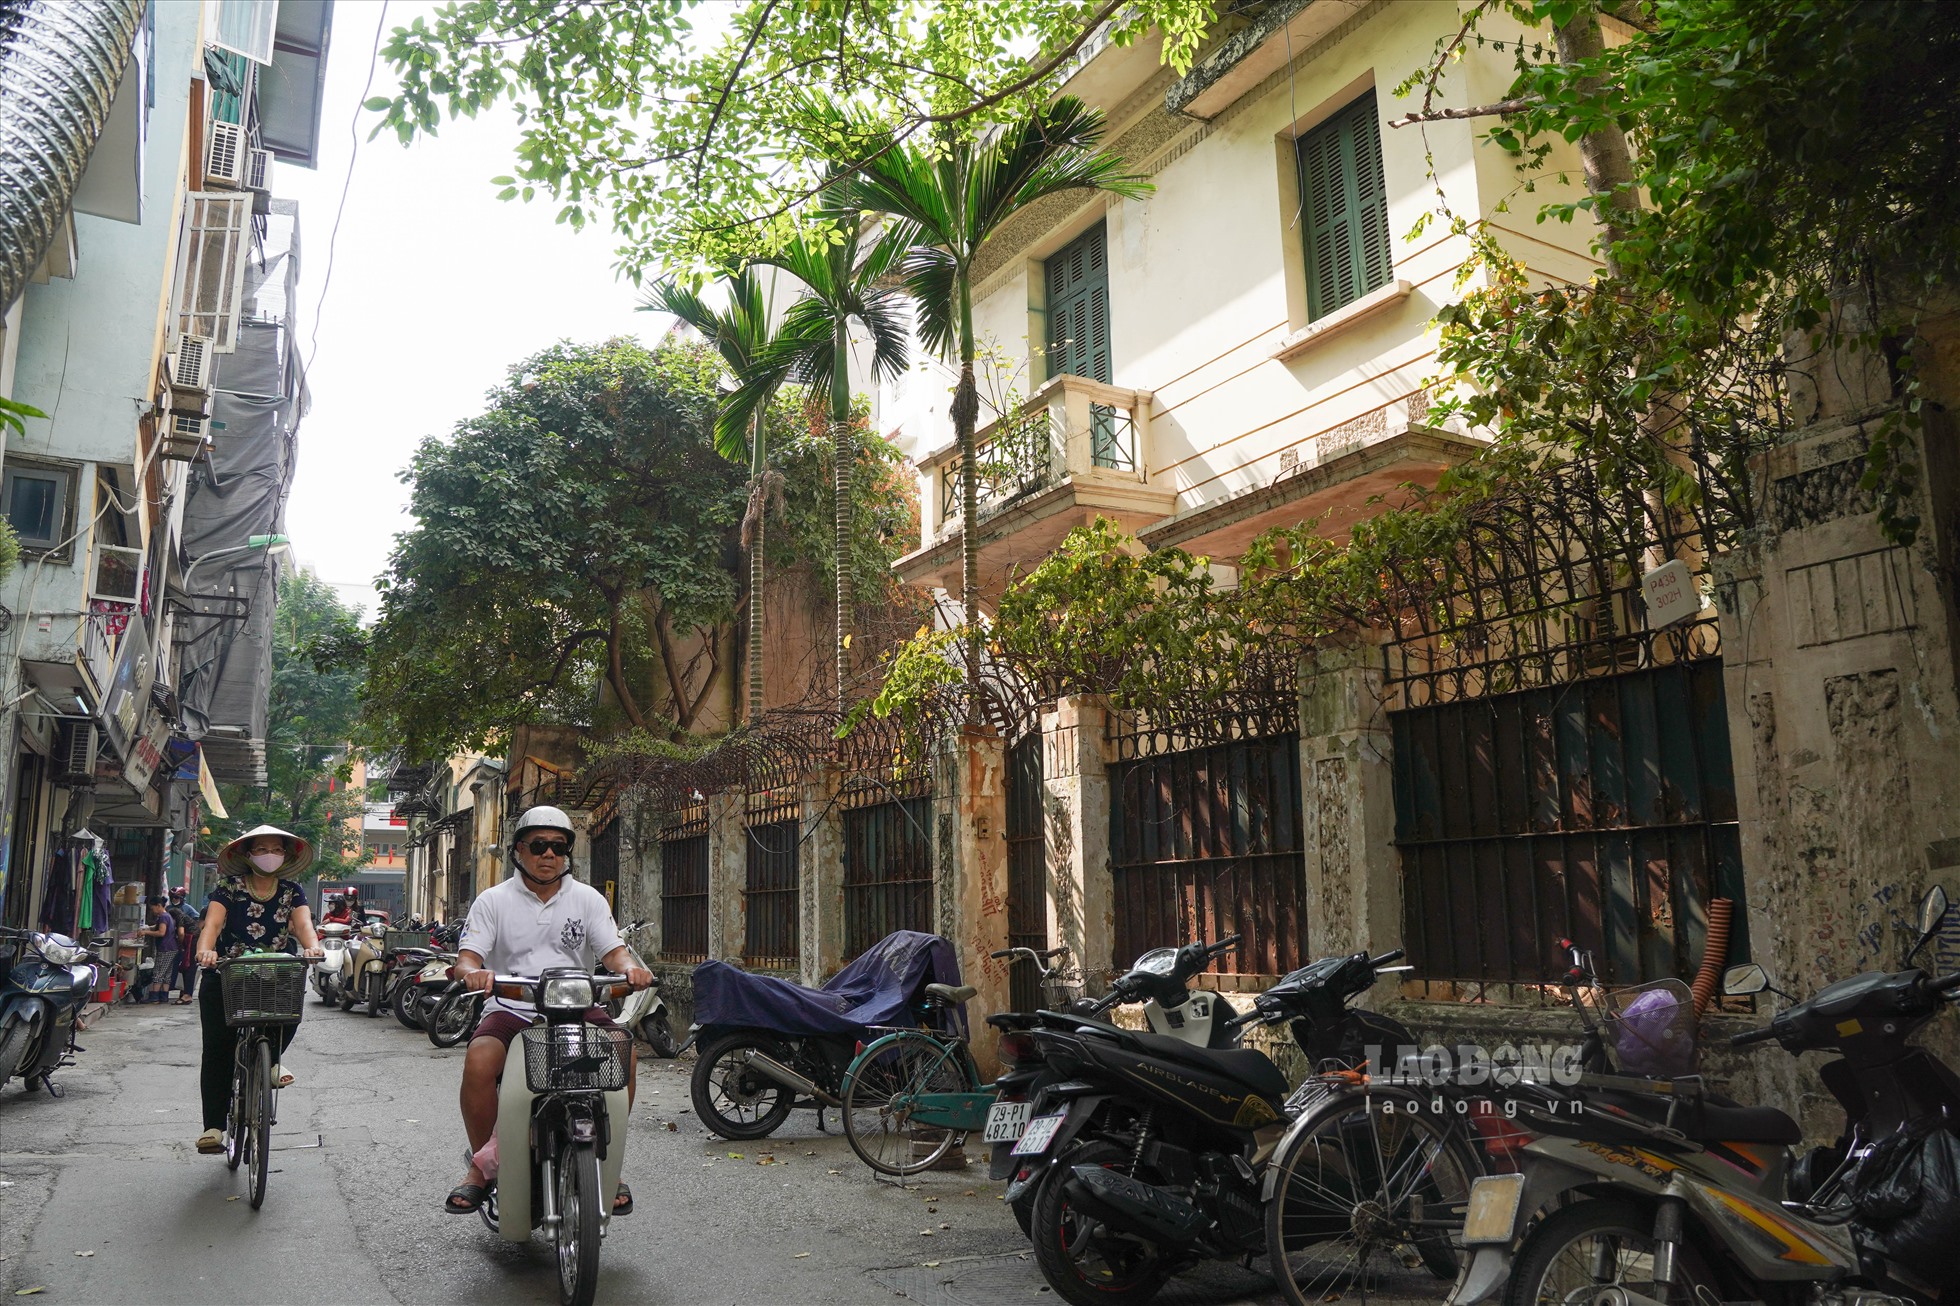 Hiện Hà Nội vẫn chưa đưa ra phương án xử lý, sử dụng biệt thự 12 Nguyễn Chế Nghĩa vì còn chờ quy định mới.